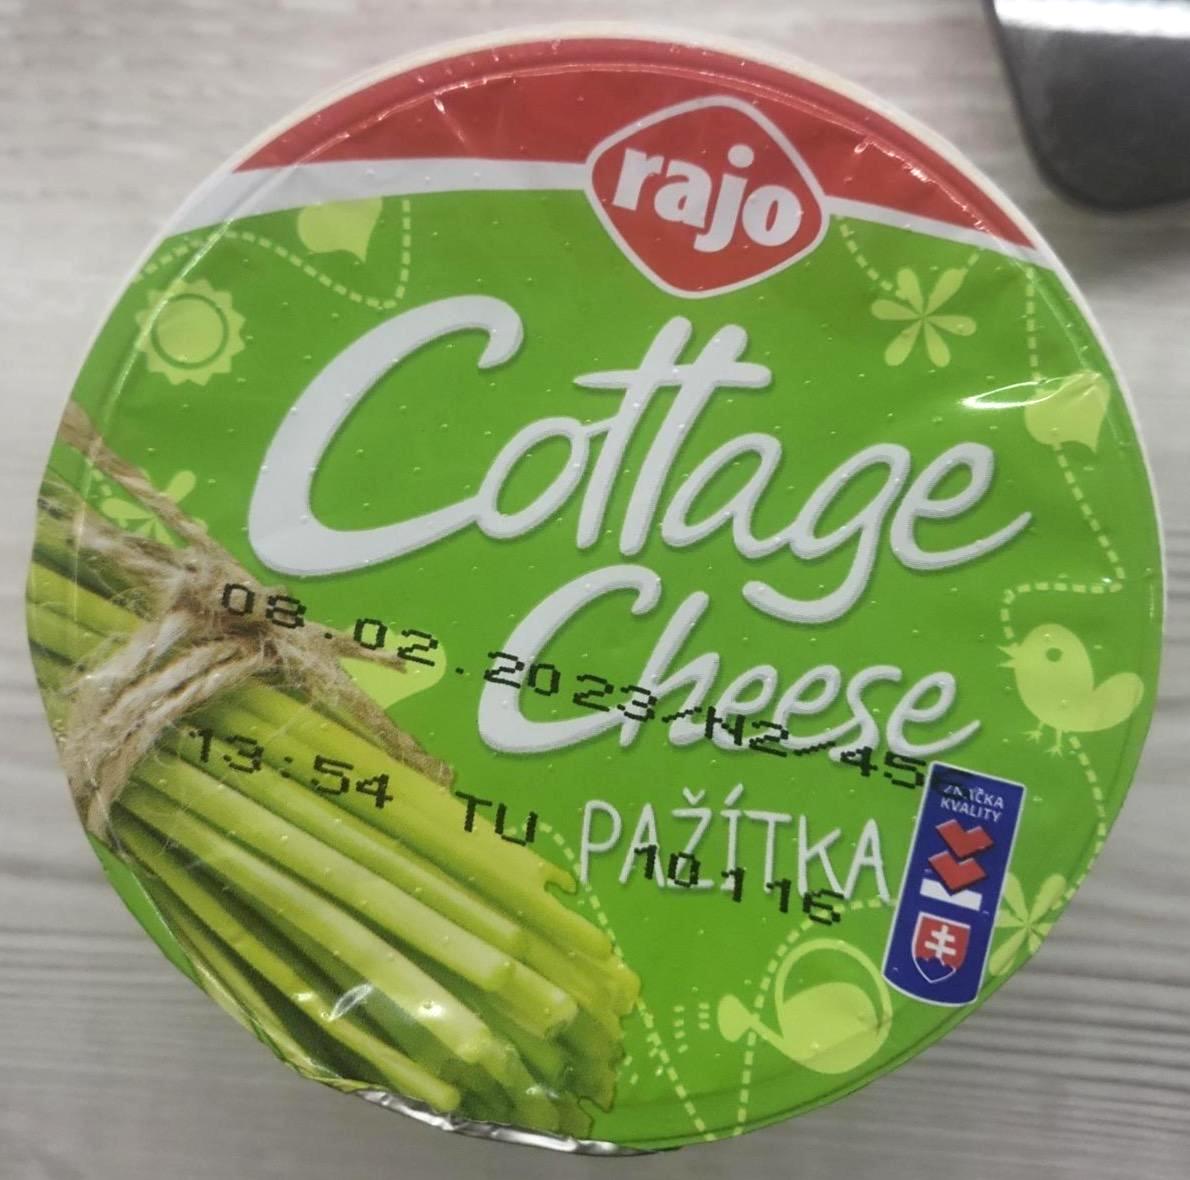 Képek - Cottage cheese pažítka Rajo